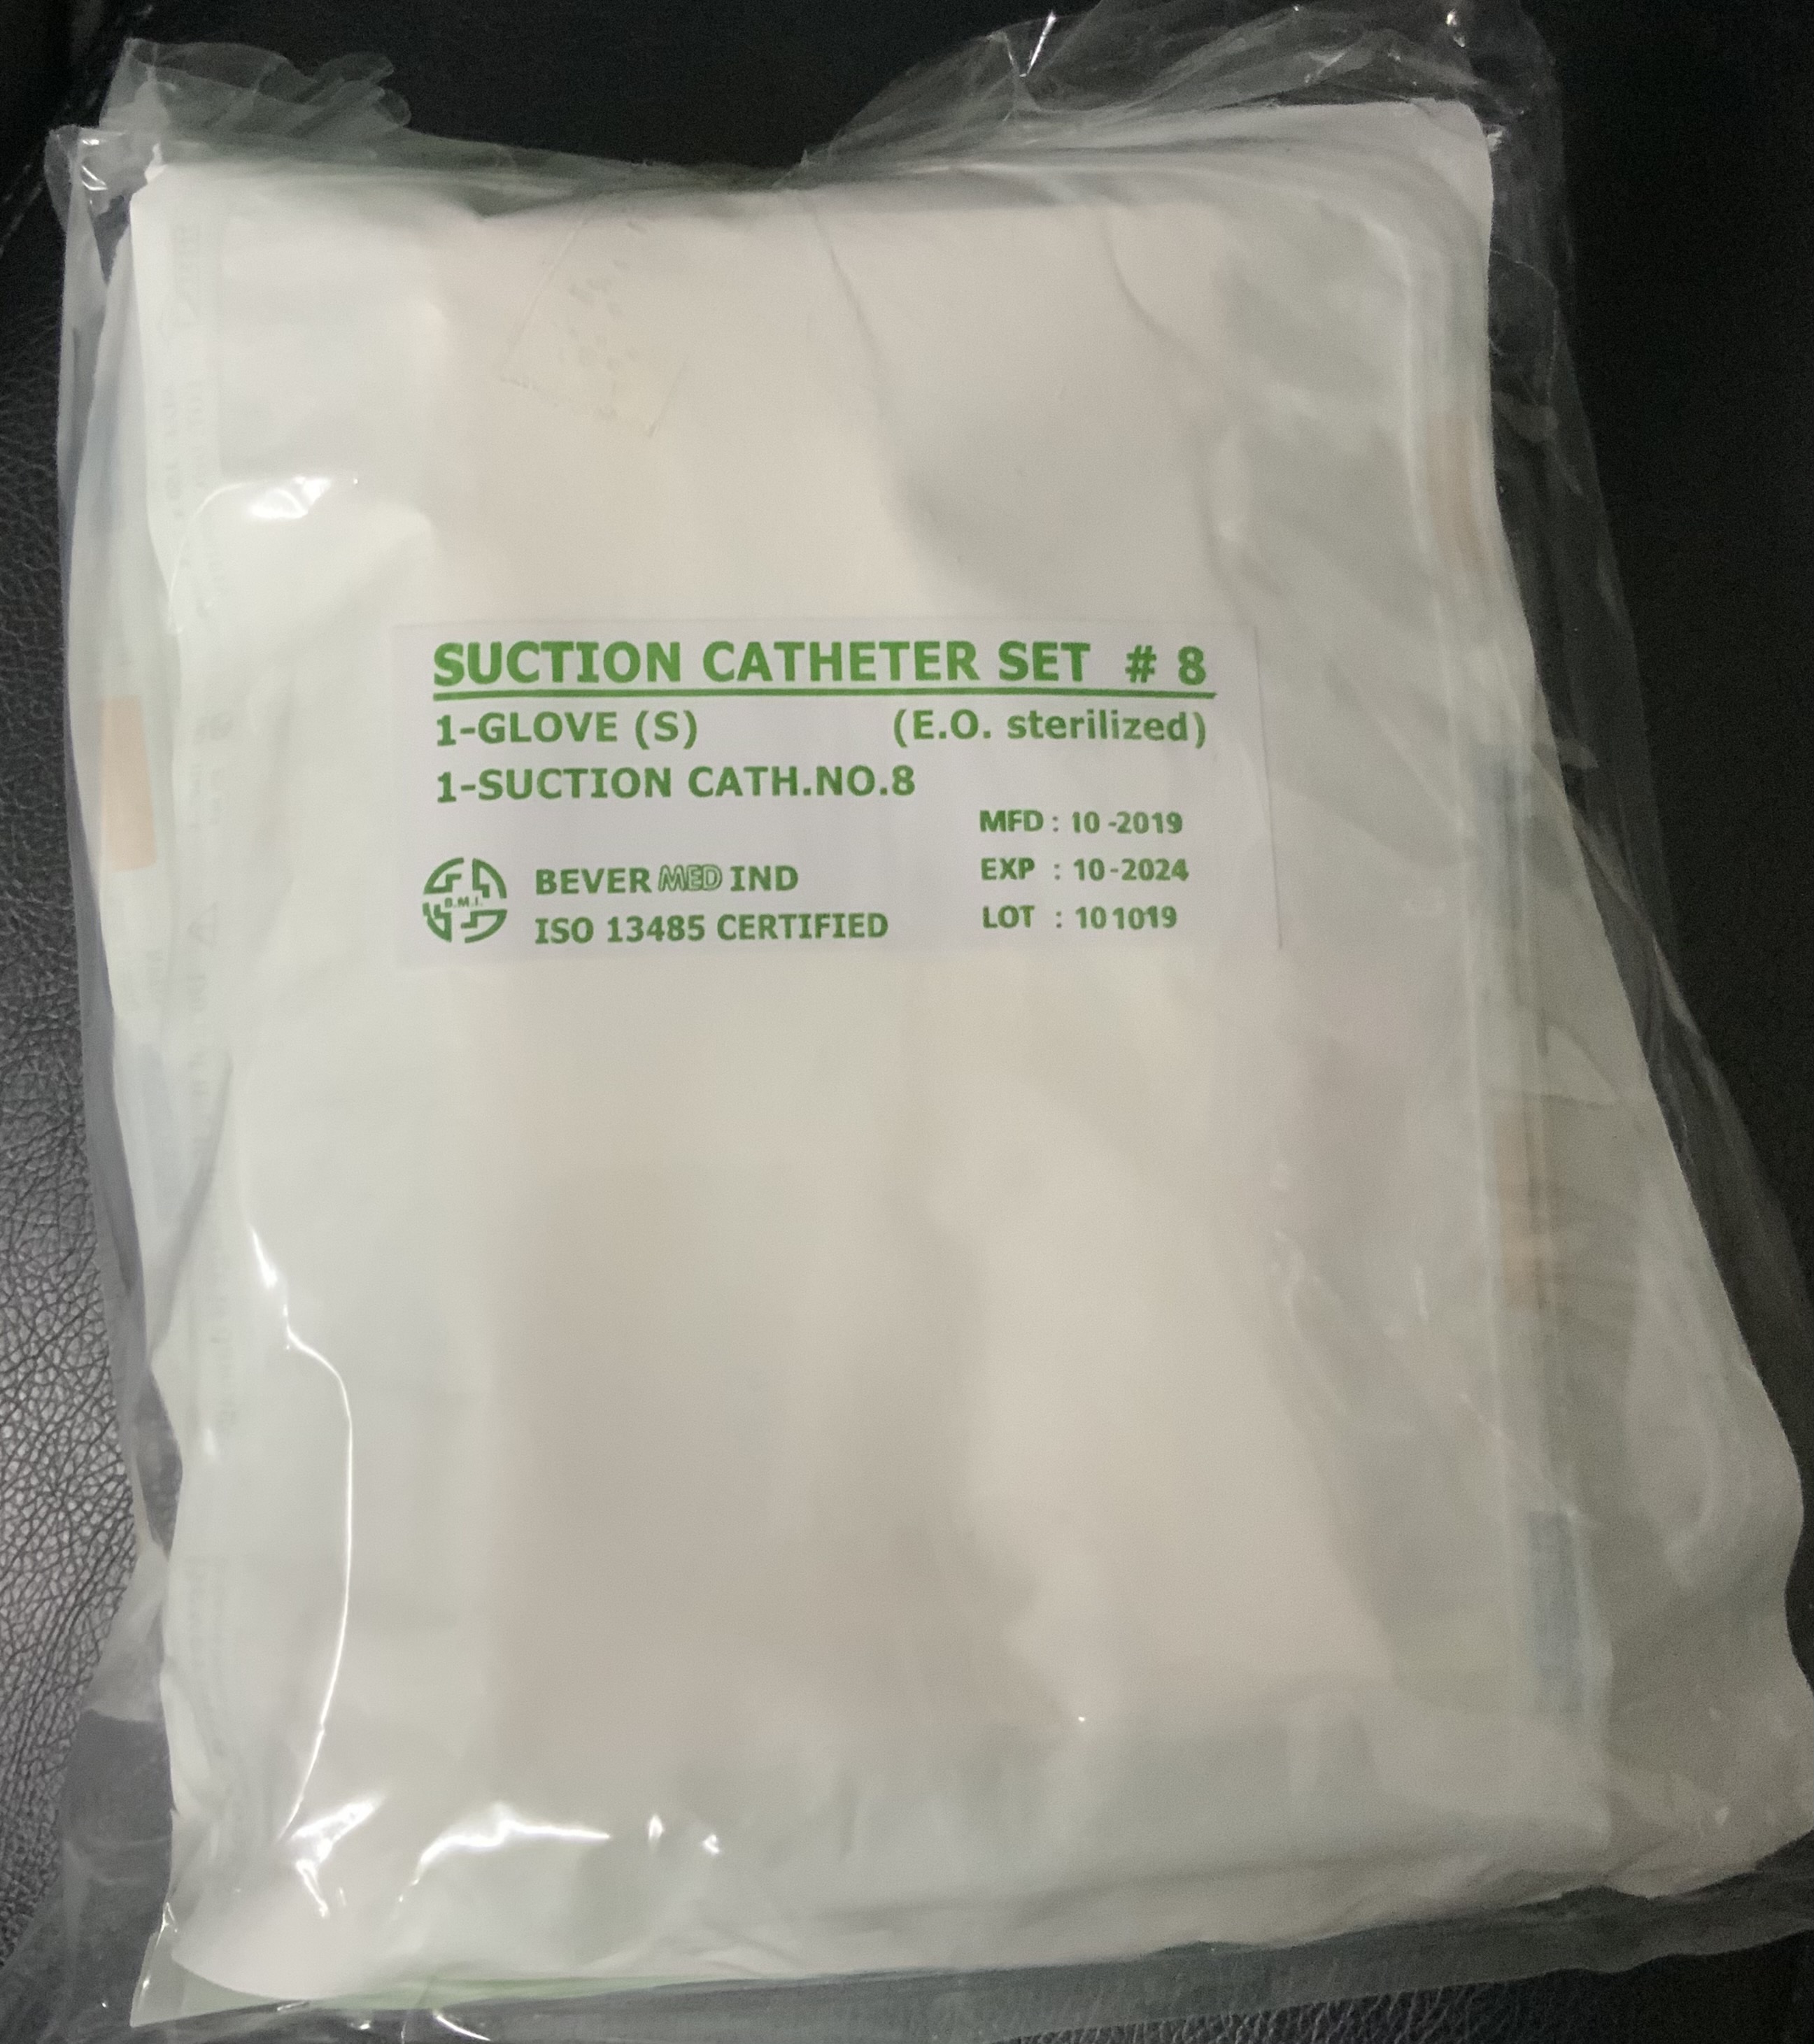 ชุดดูดเสมหะพร้อมถุงมือ suction catheter set #8 ชุดสายดูดเสมหะ no.8หัวสีฟ้า+ ถุงมือ size S ( 10 ชุด)ปลอดภัย สะอาด ตามมาตรฐานทางการแพทย์